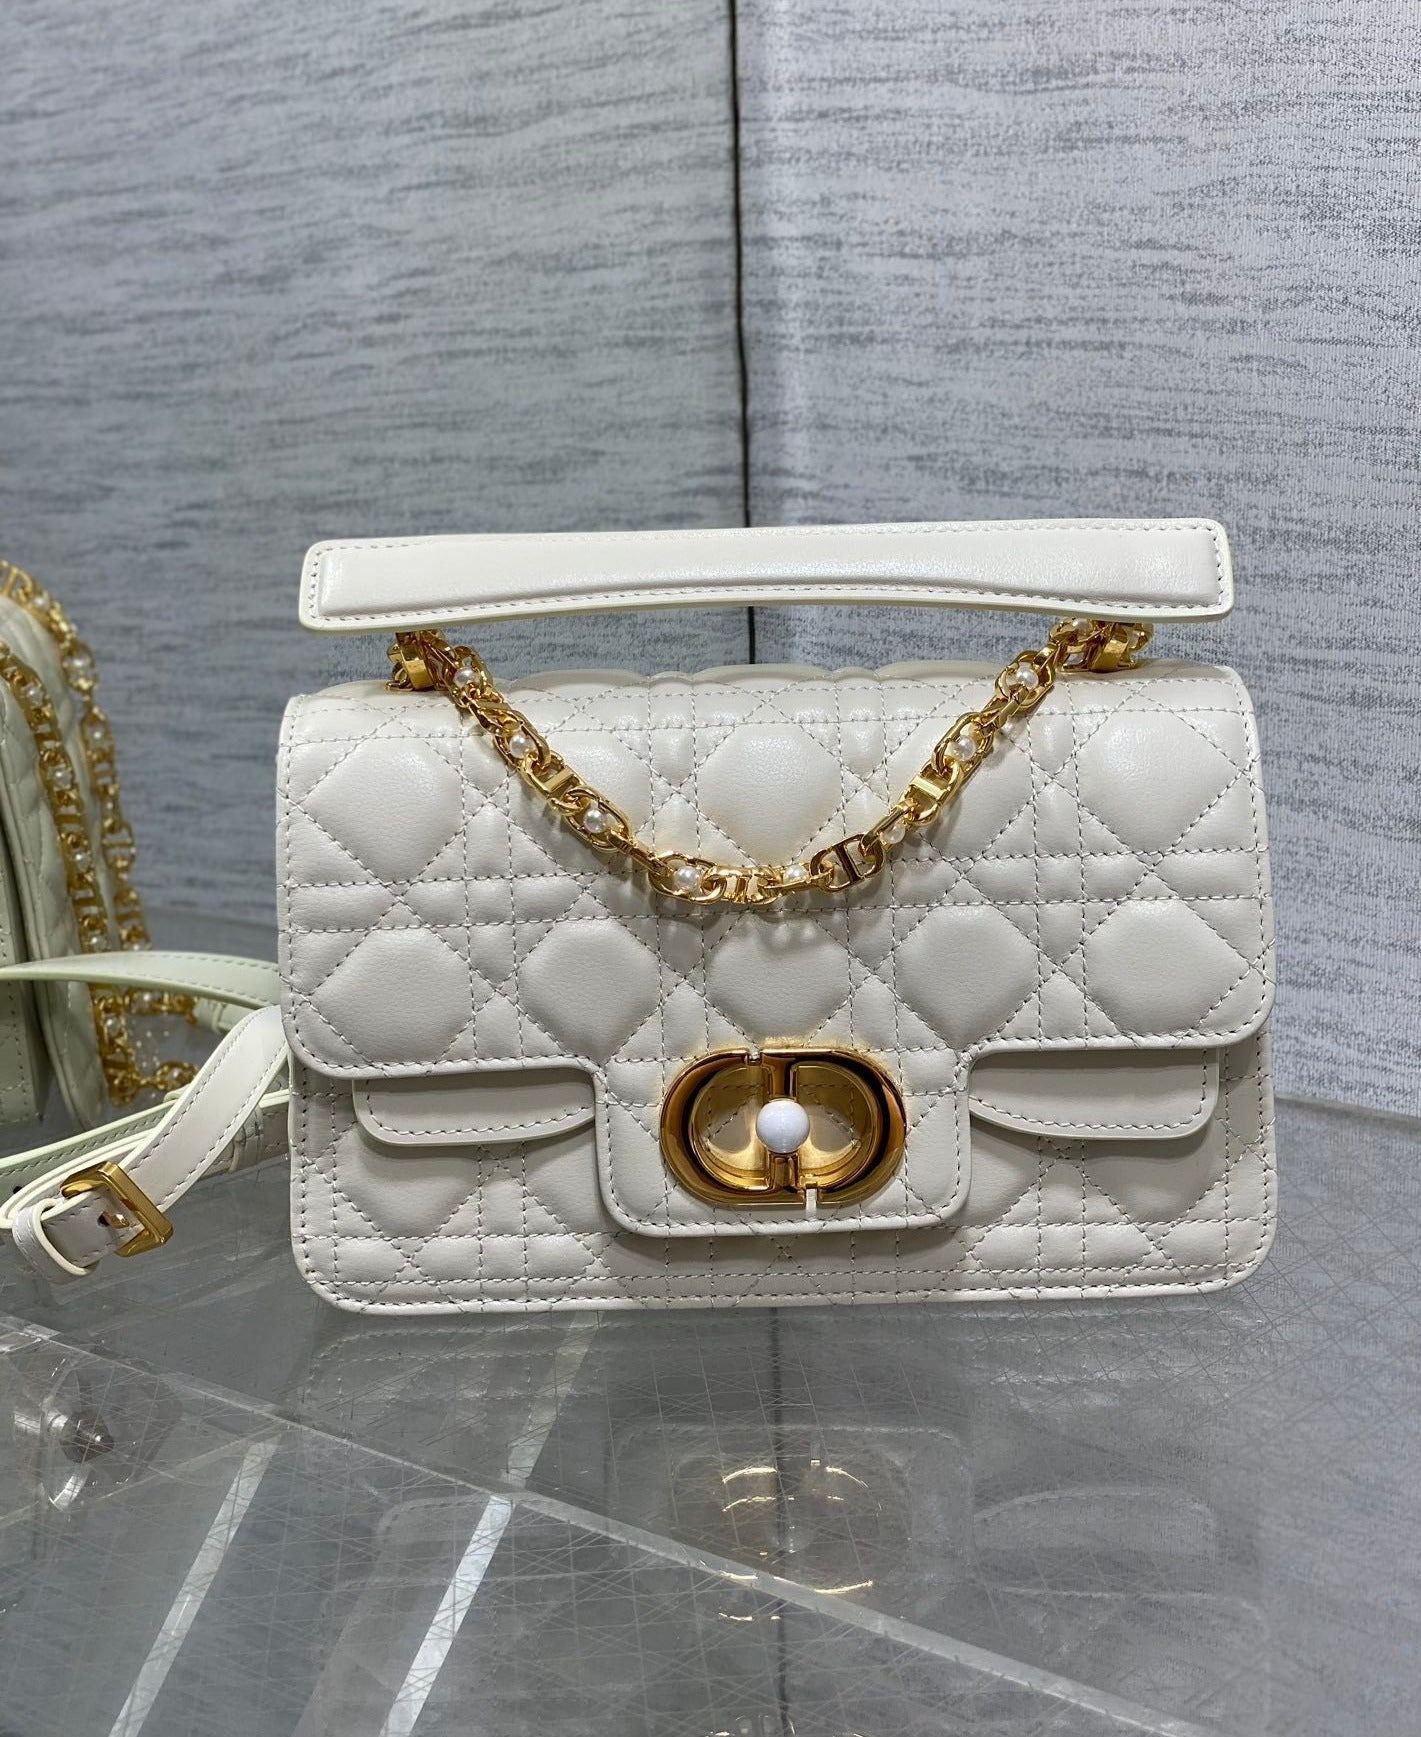 Dior Jolie Bag